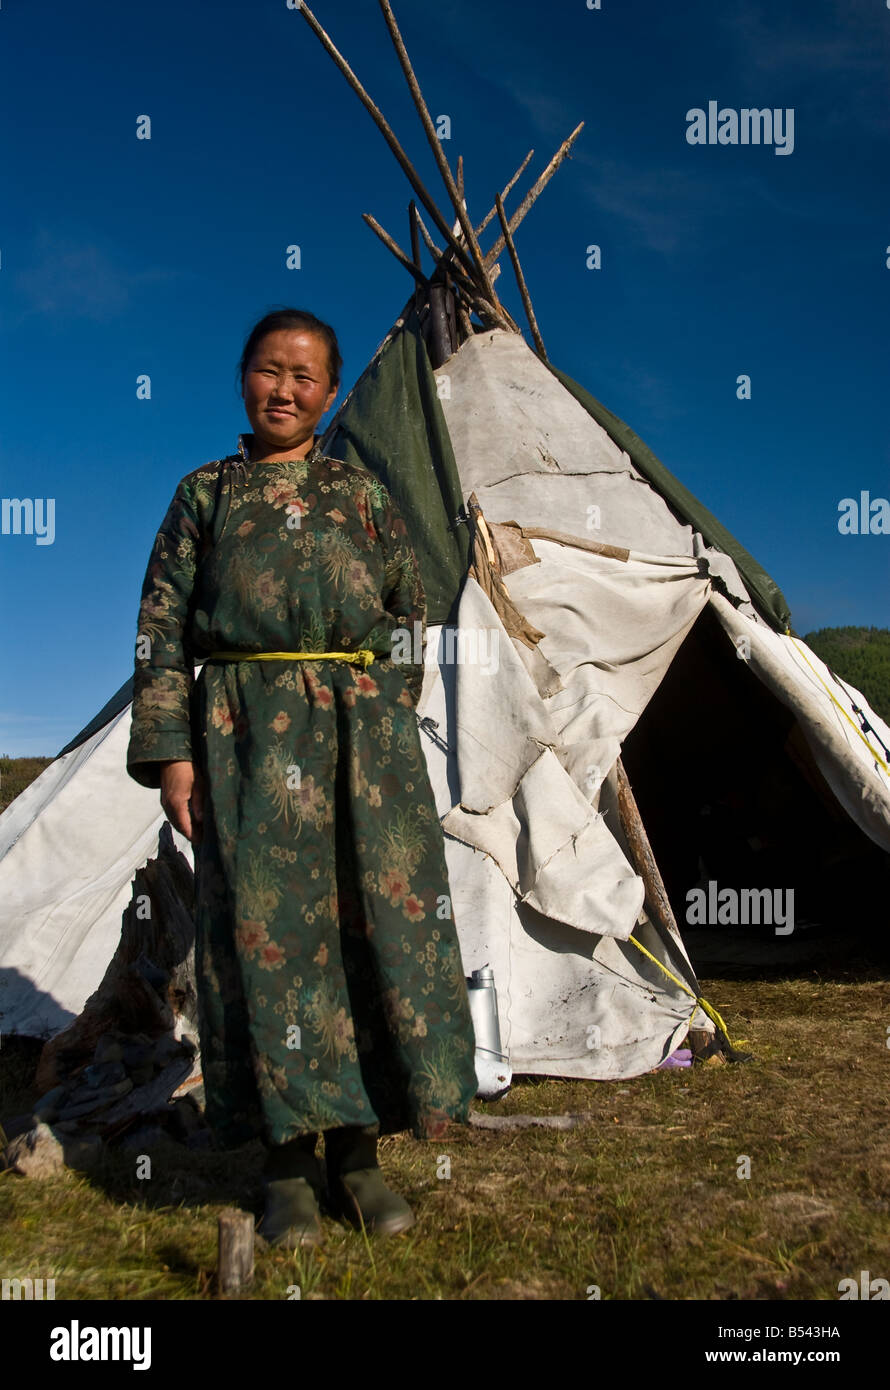 Tsaatan Woman outside the tepee Northern Mongolia Stock Photo